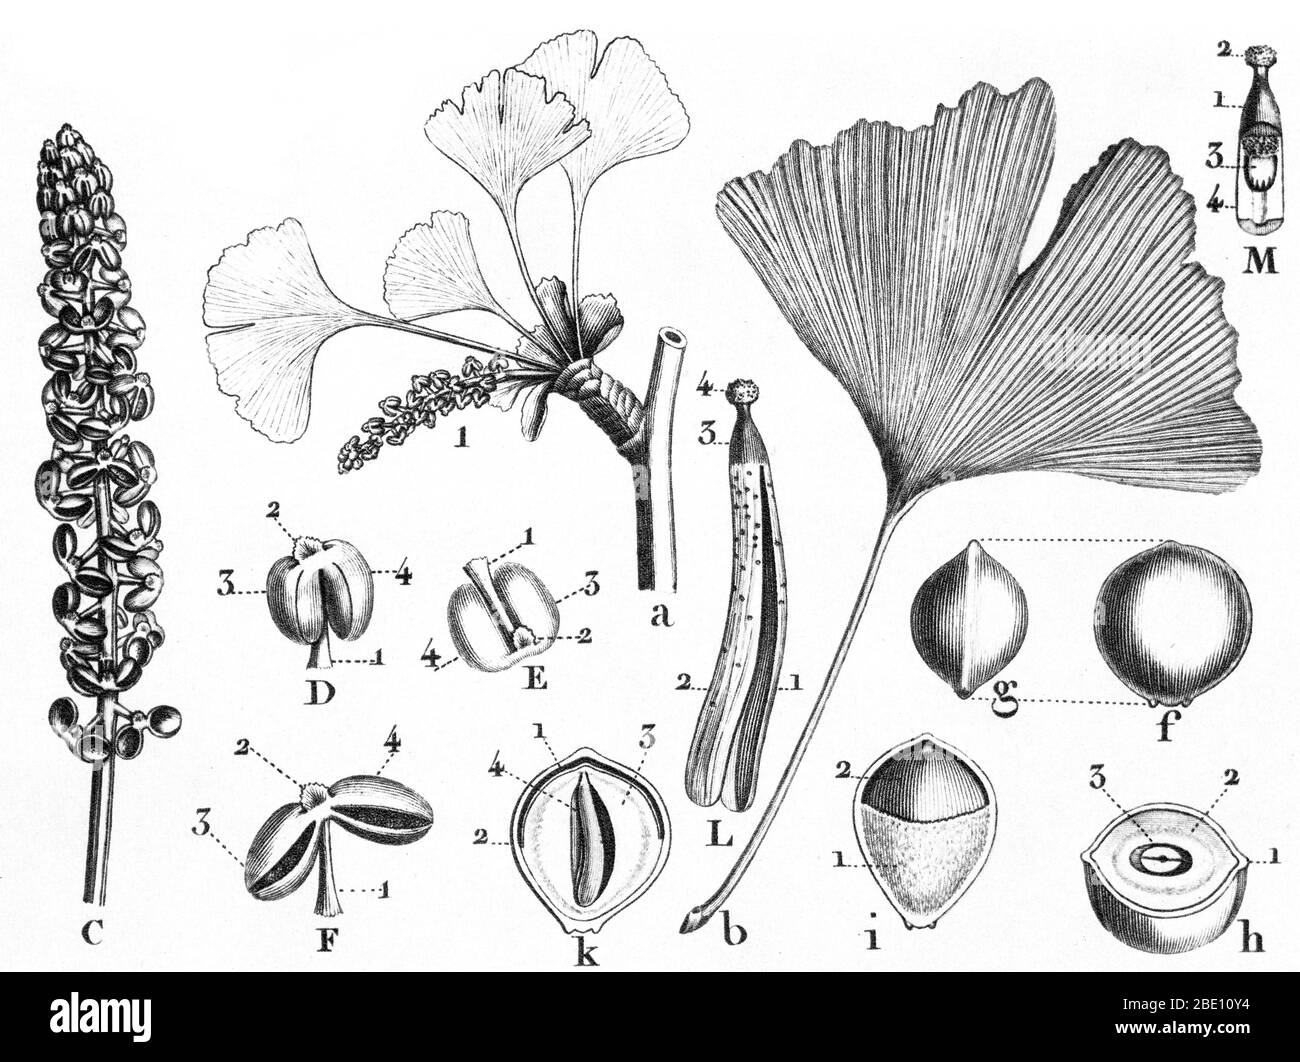 Le Ginkgo biloba par Louis Claude Marie Richard (le 17 septembre. 1754 - 6 juin 1821) un botaniste français et illustrateur botanique. Le ginkgo est un genre de plantes à fleurs non inhabituelle. Le nom scientifique est également utilisé comme le nom anglais. L'ordre auquel il appartient, Ginkgoales, est apparu dans le permien, il y a 270 millions d'années, peut-être dérivé de seed ferns' de l'ordre Peltaspermales. Le taux d'évolution au sein du genre a été lente, et presque toutes ses espèces ont disparu à la fin de l'exception ; le pliocène est la seule espèce vivante, le Ginkgo biloba, qui n'est que fou Banque D'Images